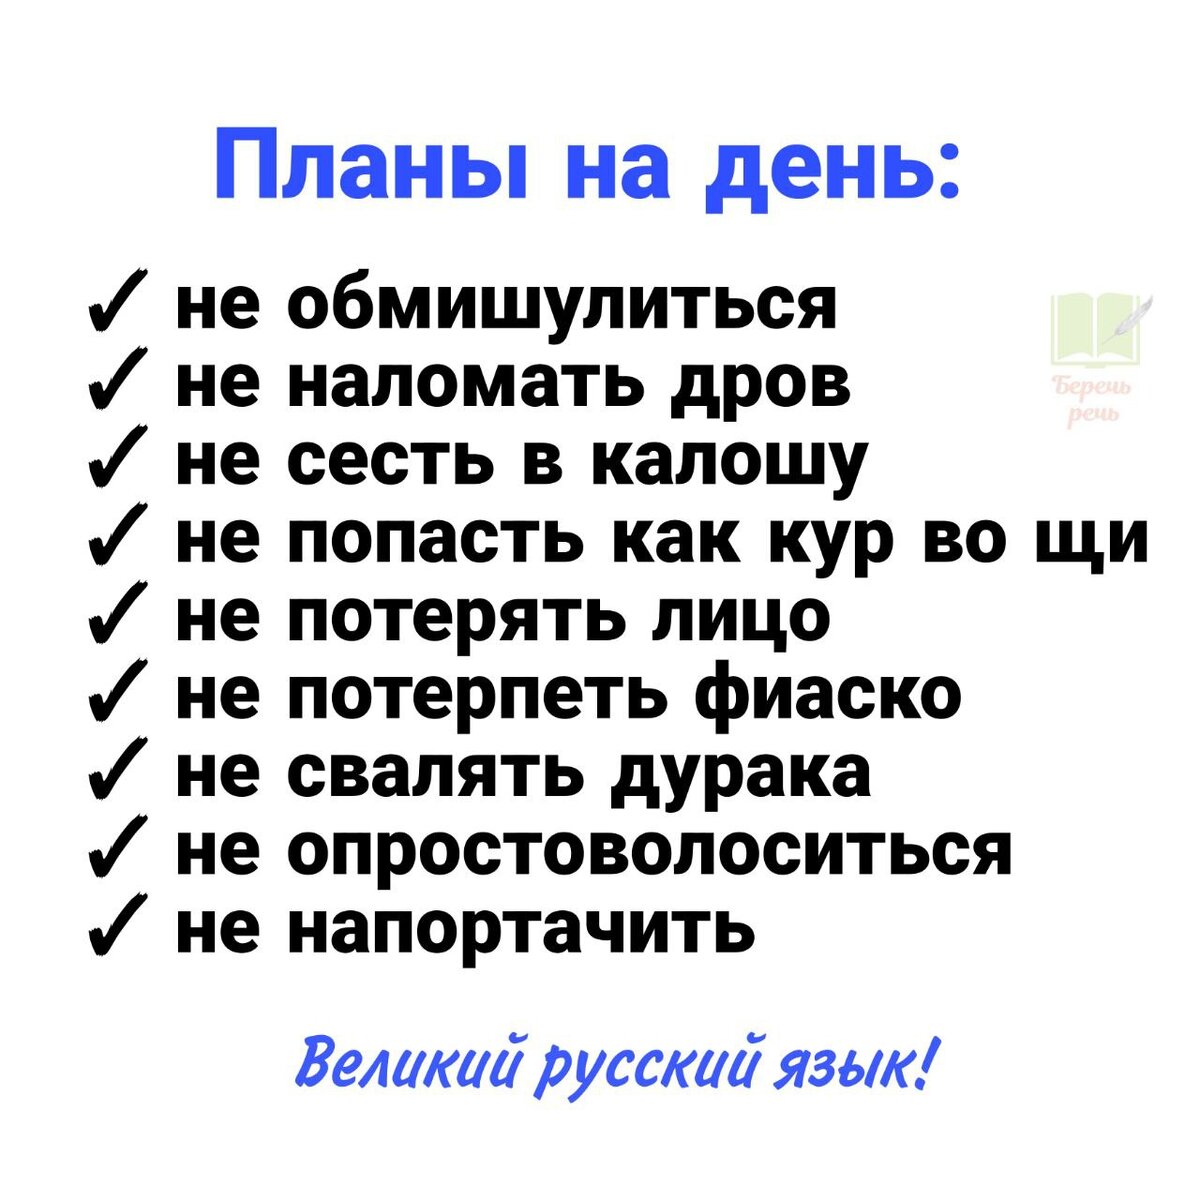 Я люблю шутки, связанные с русским языком. Надеюсь, что вы тоже.